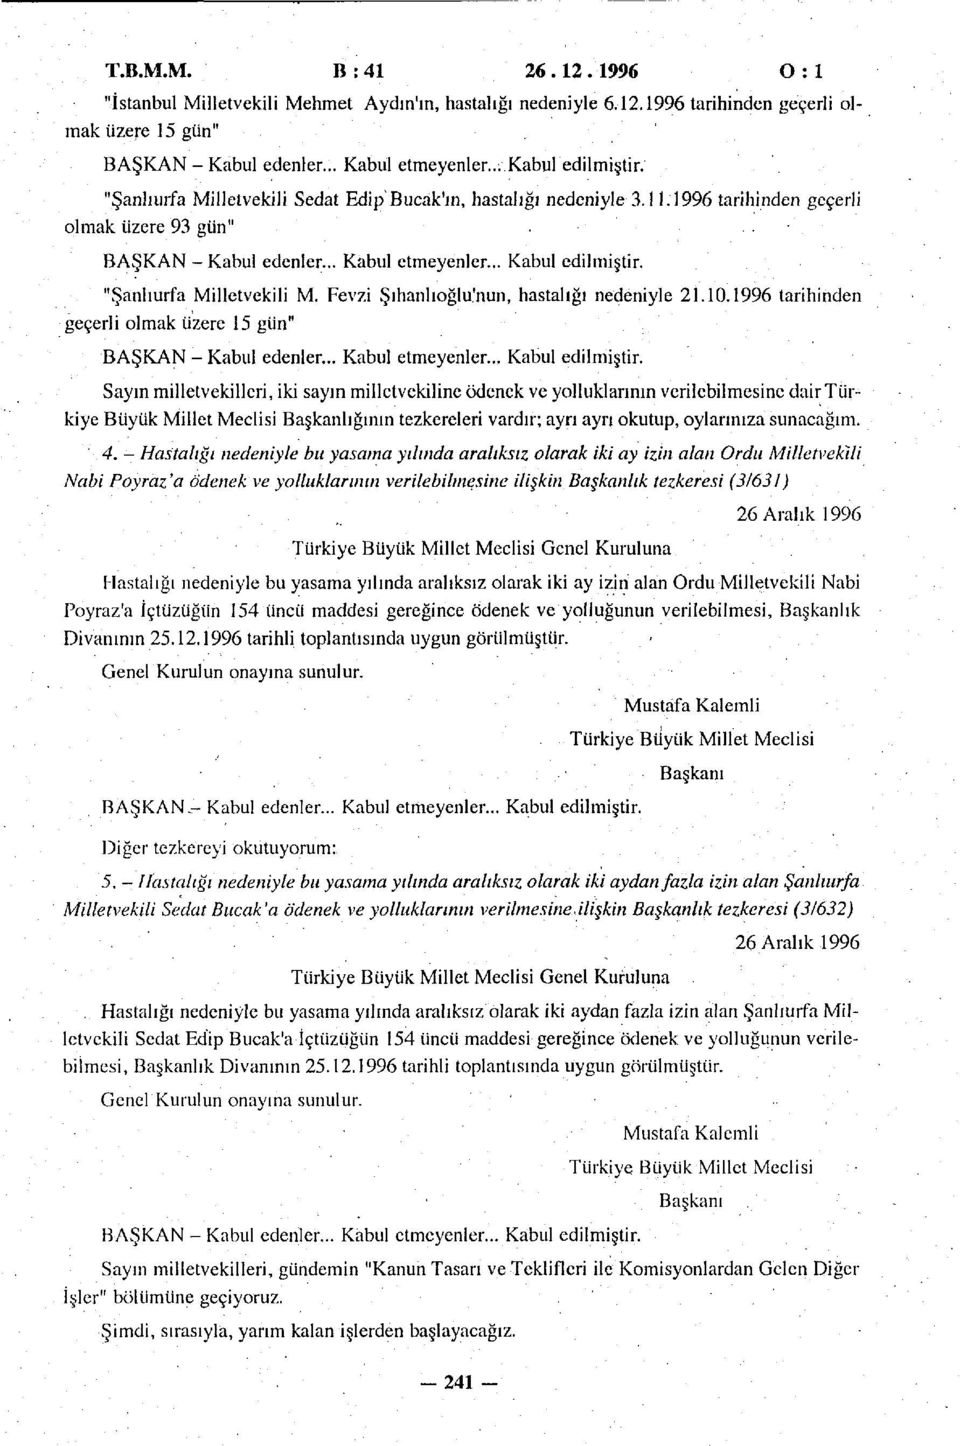 "Şanlıurfa Milletvekili M. Fevzi Şıhanlıoğlu'nun, hastalığı nedeniyle 21.10.1996 tarihinden geçerli olmak üzere 15 gün" BAŞKAN - Kabul edenler... Kabul etmeyenler... Kabul edilmiştir.